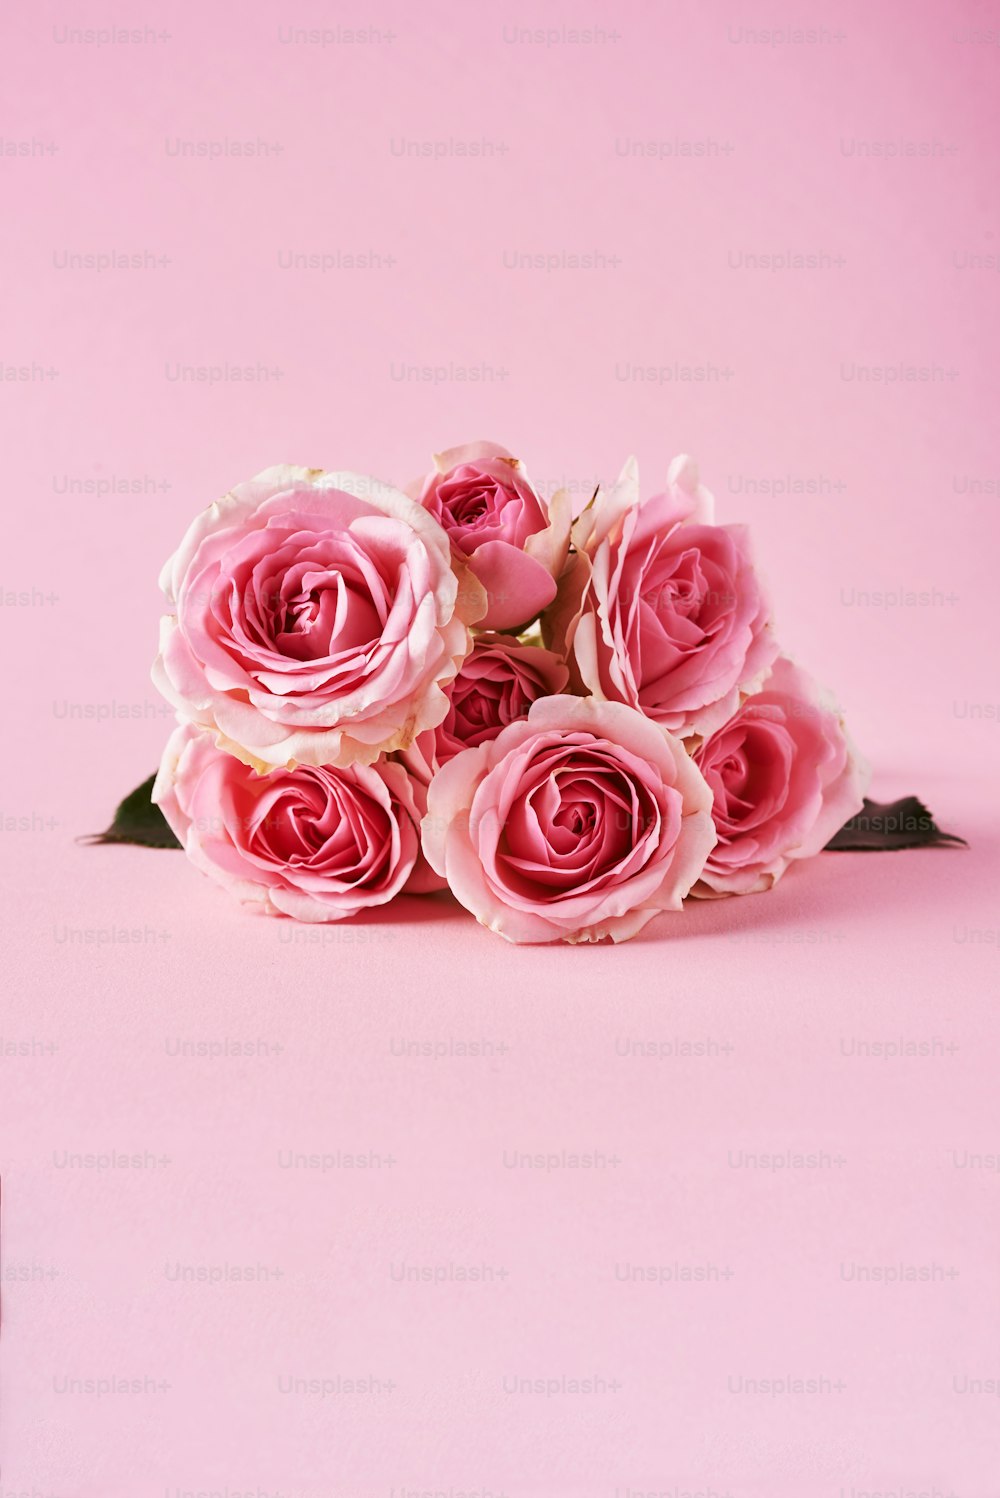 ピンクの背景にピンクのバラの花束